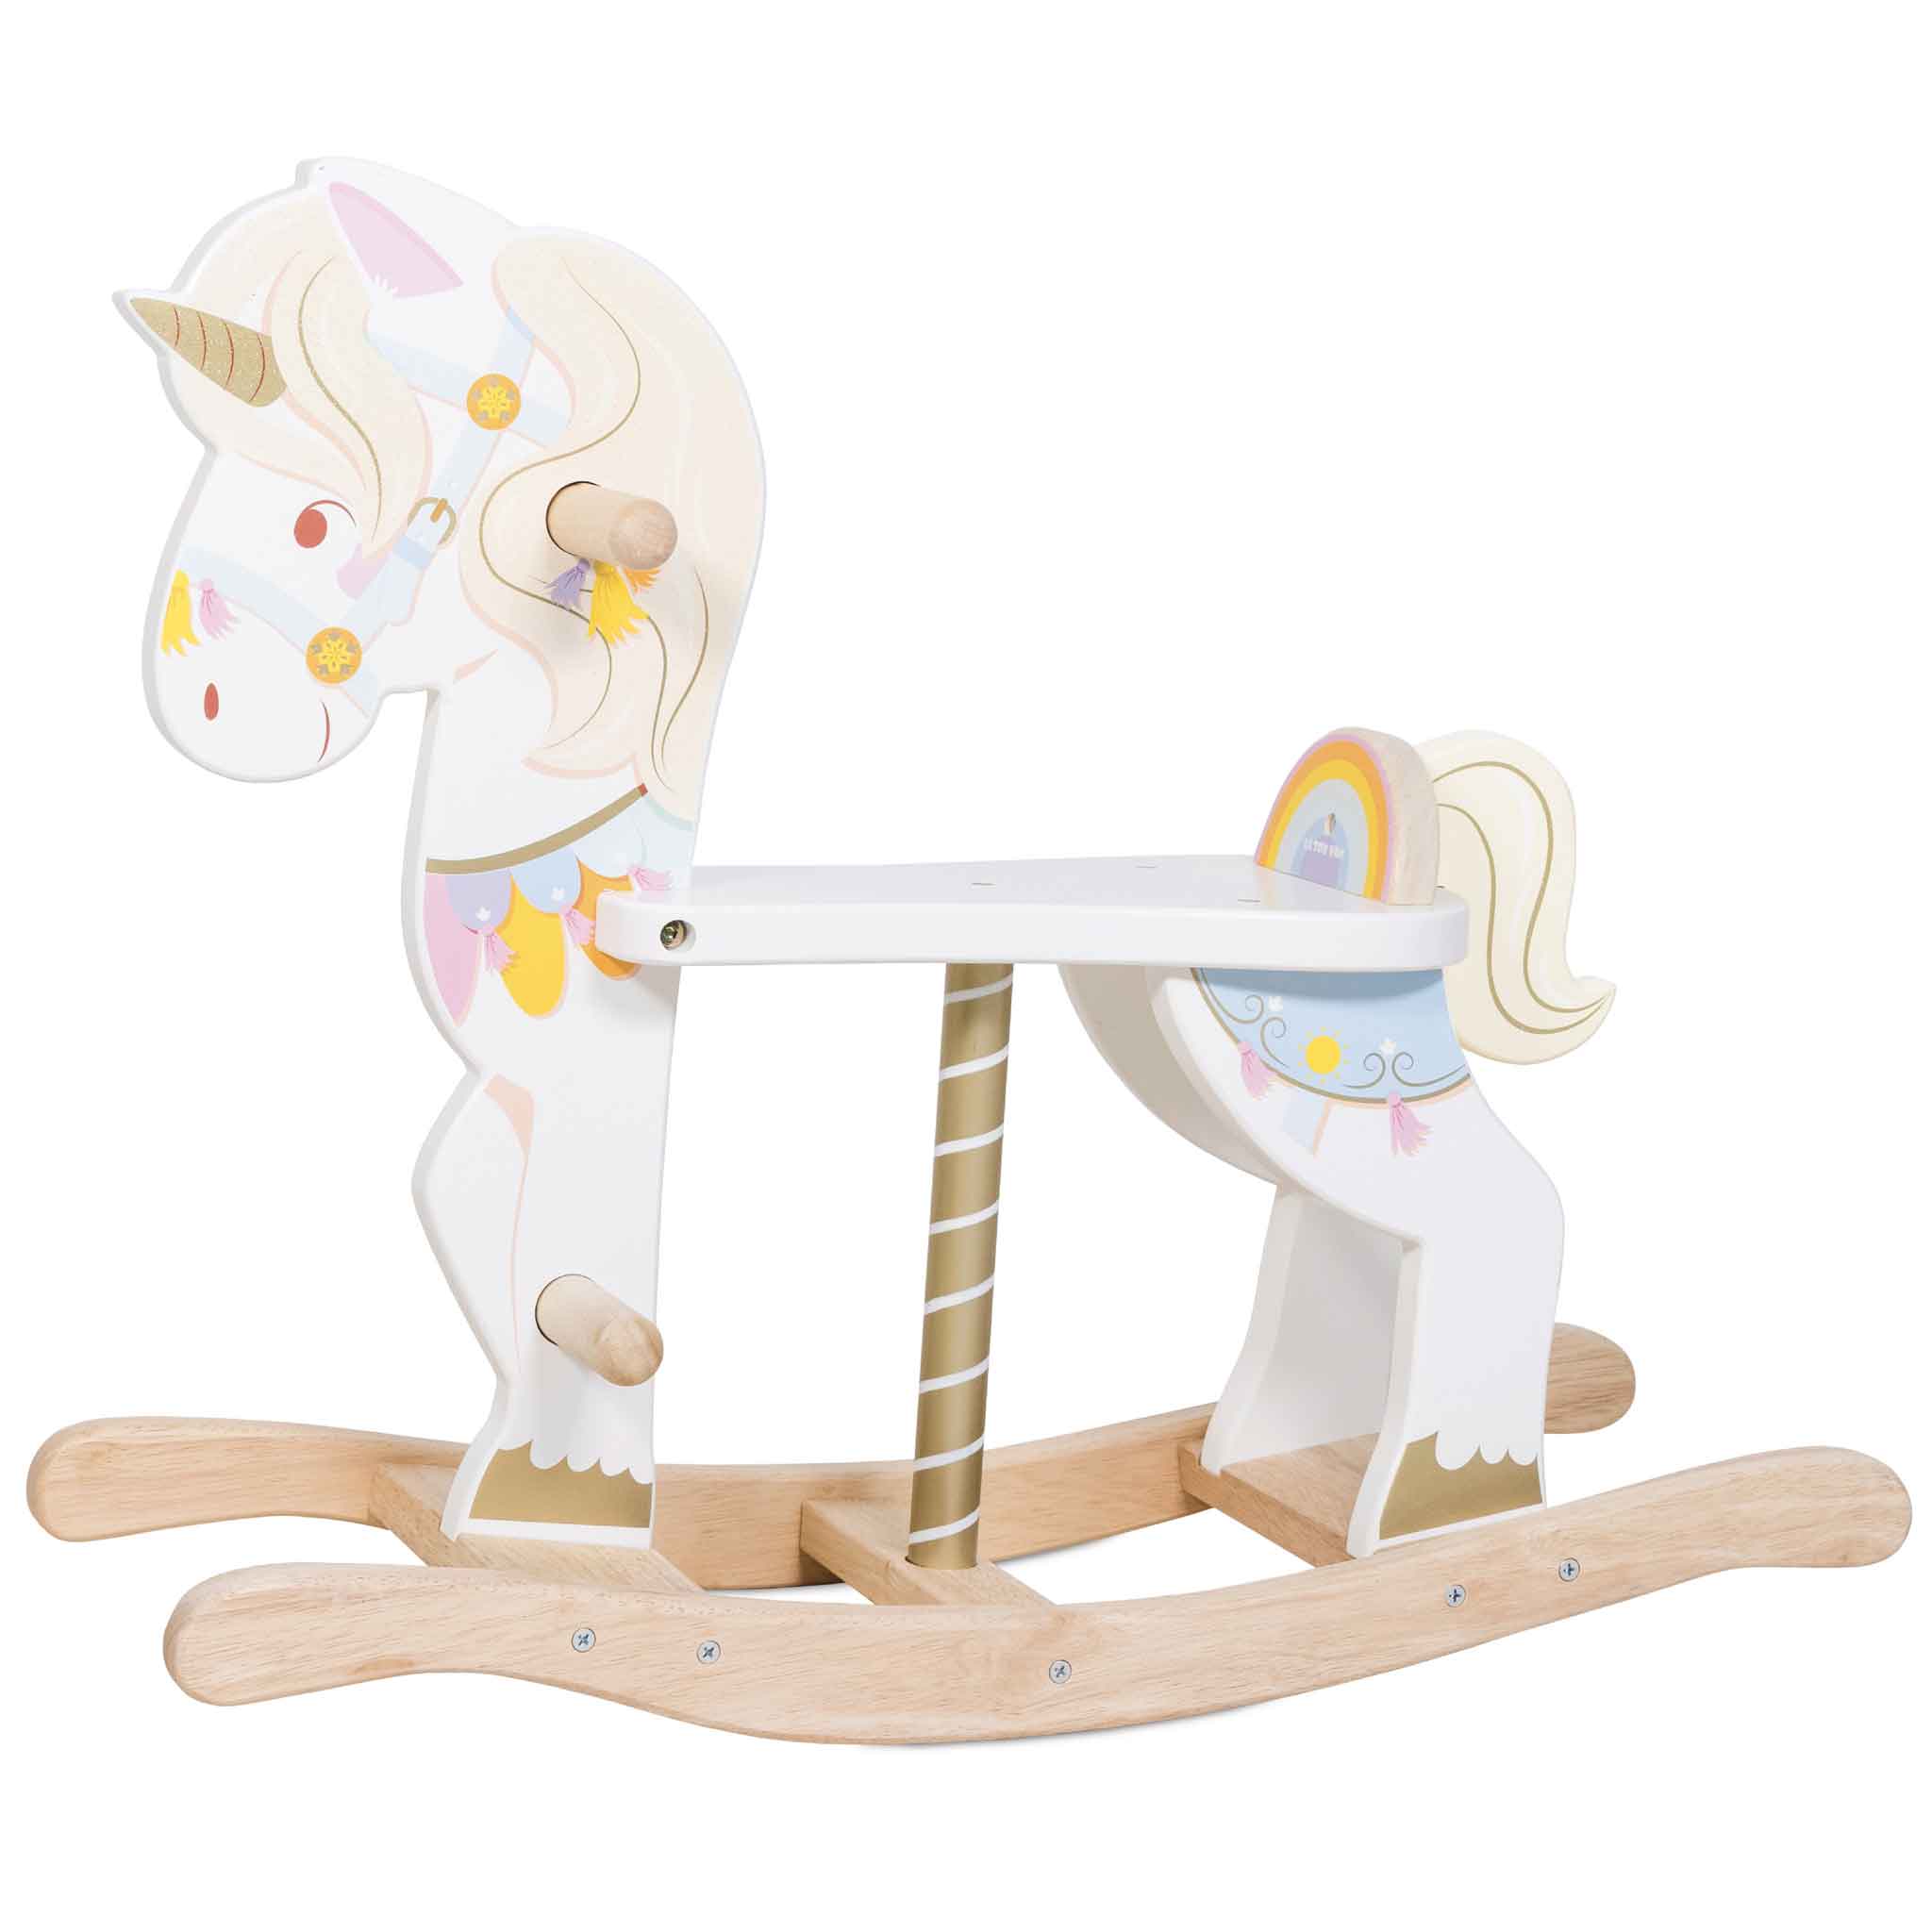 Magical Rocking Unicorn Carousel